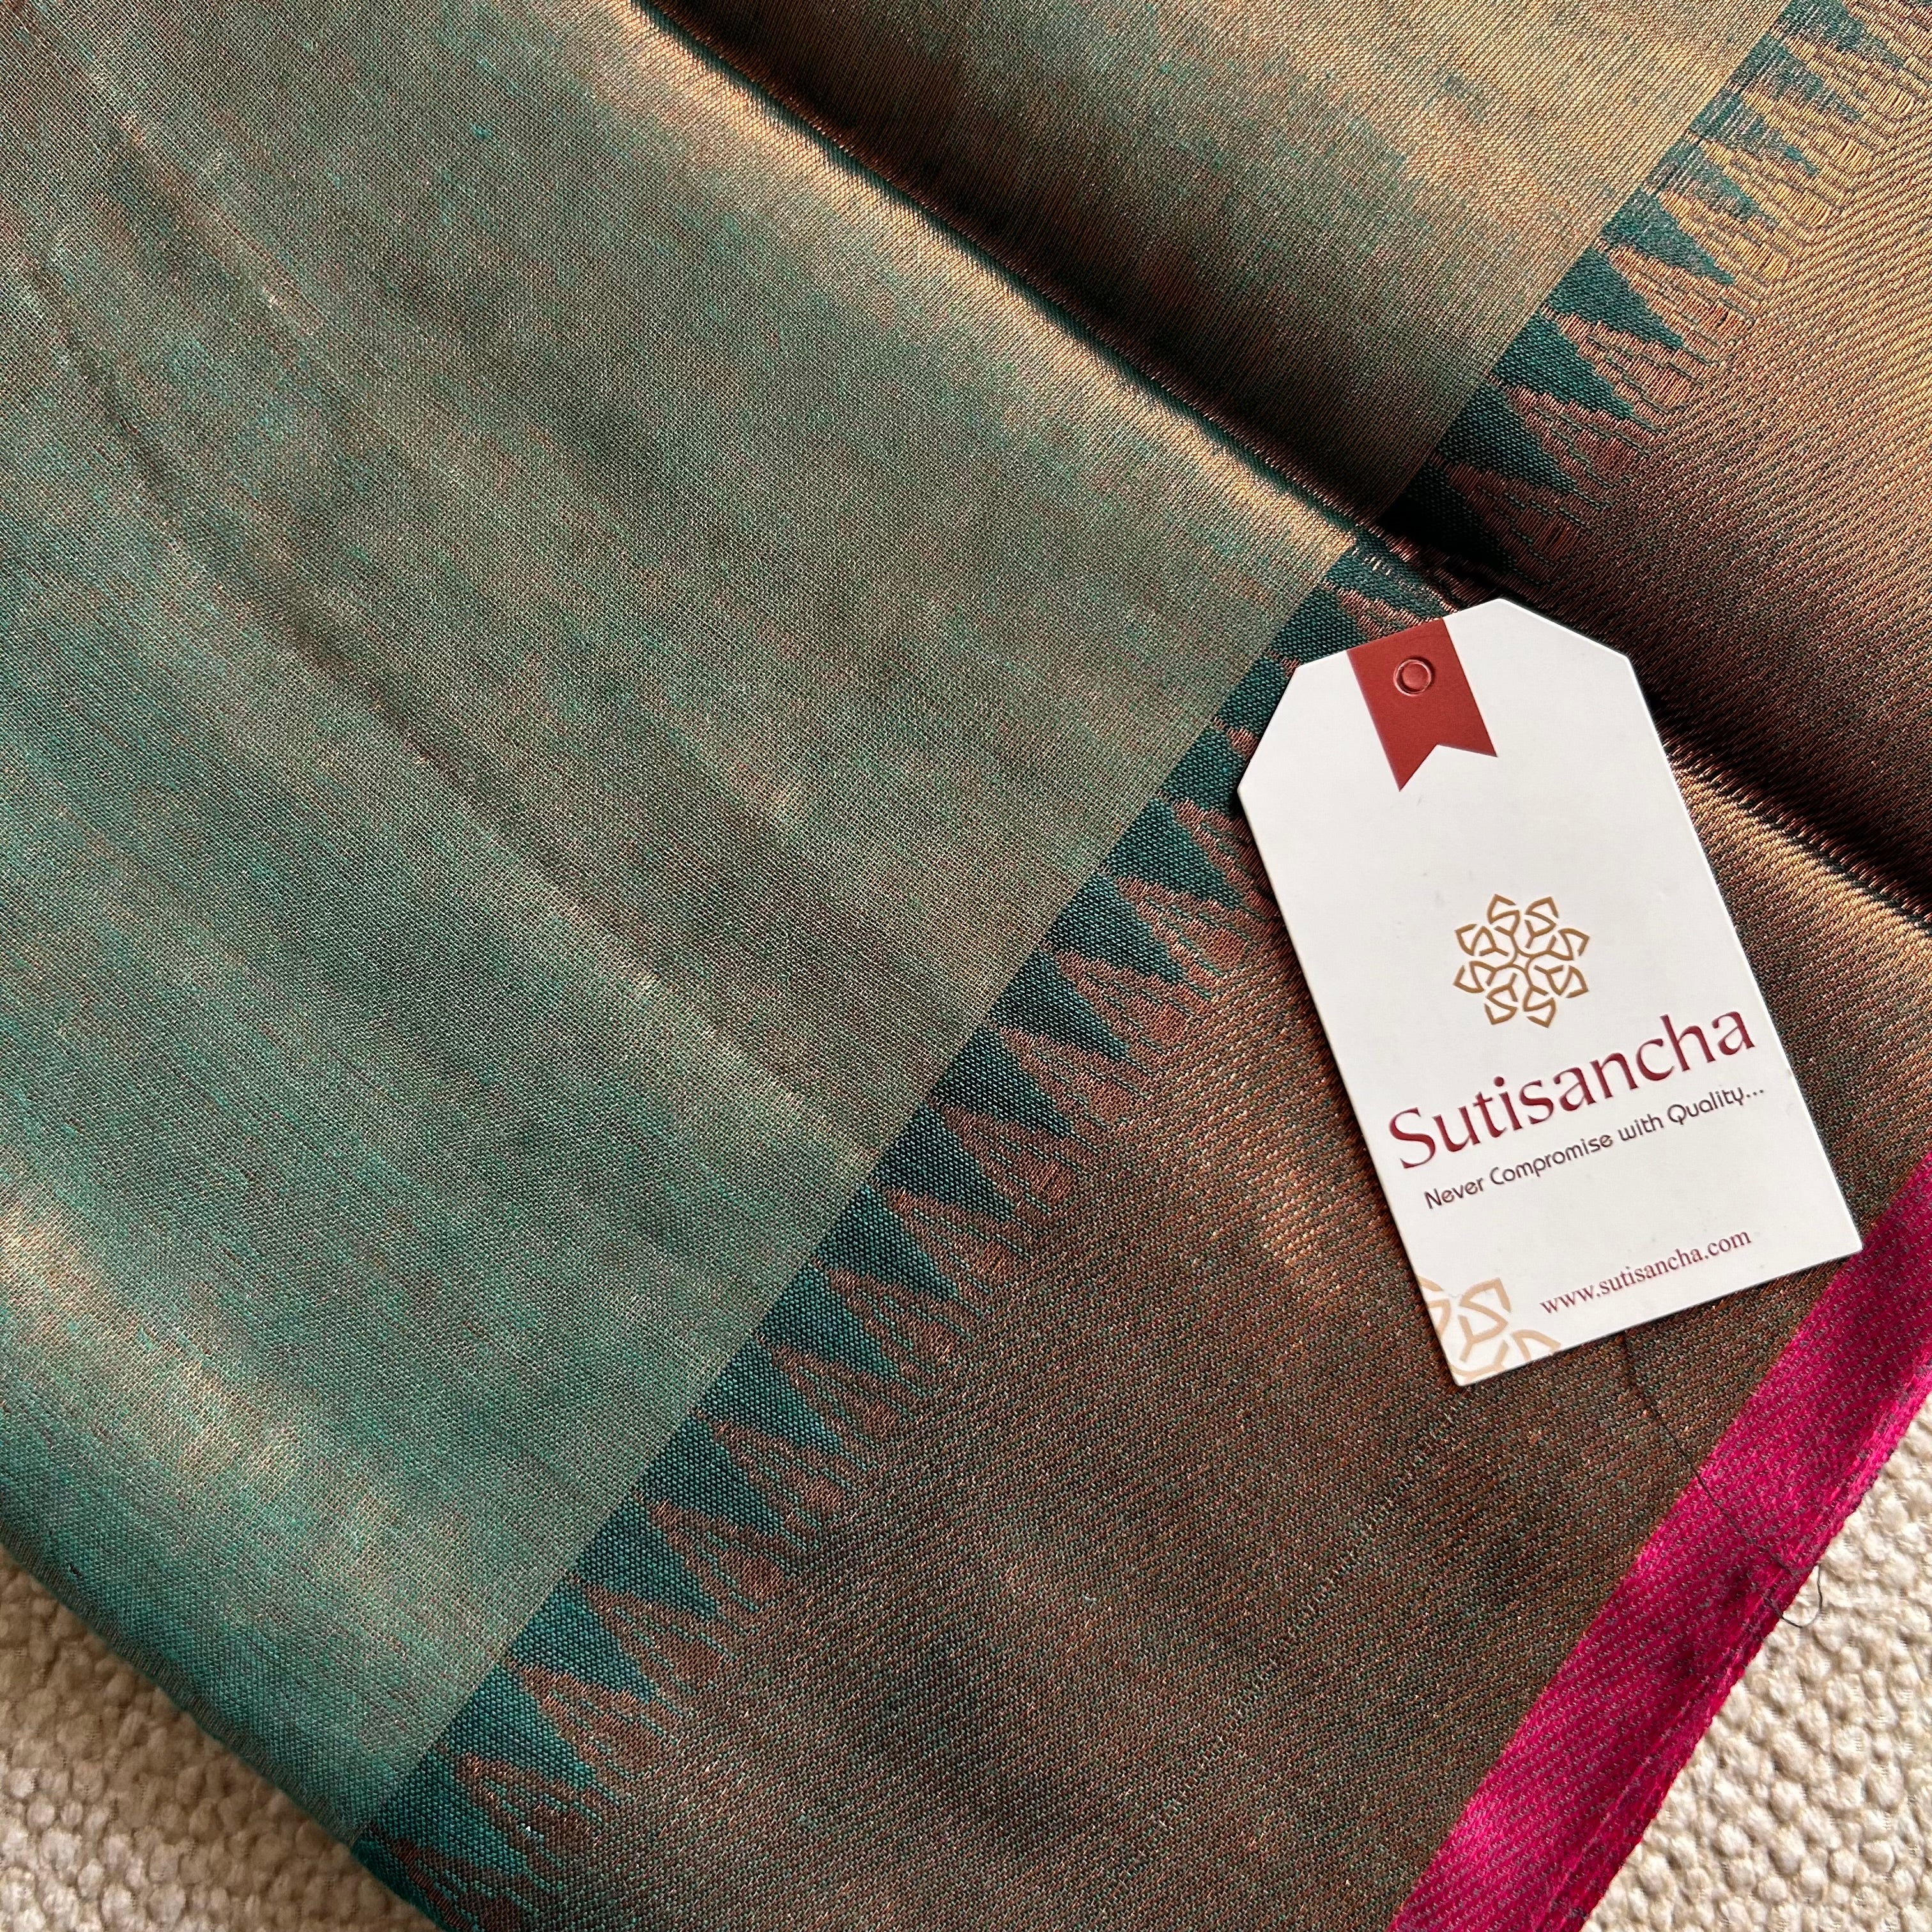 Sutisancha Rama Green Handloom Tissue Saree